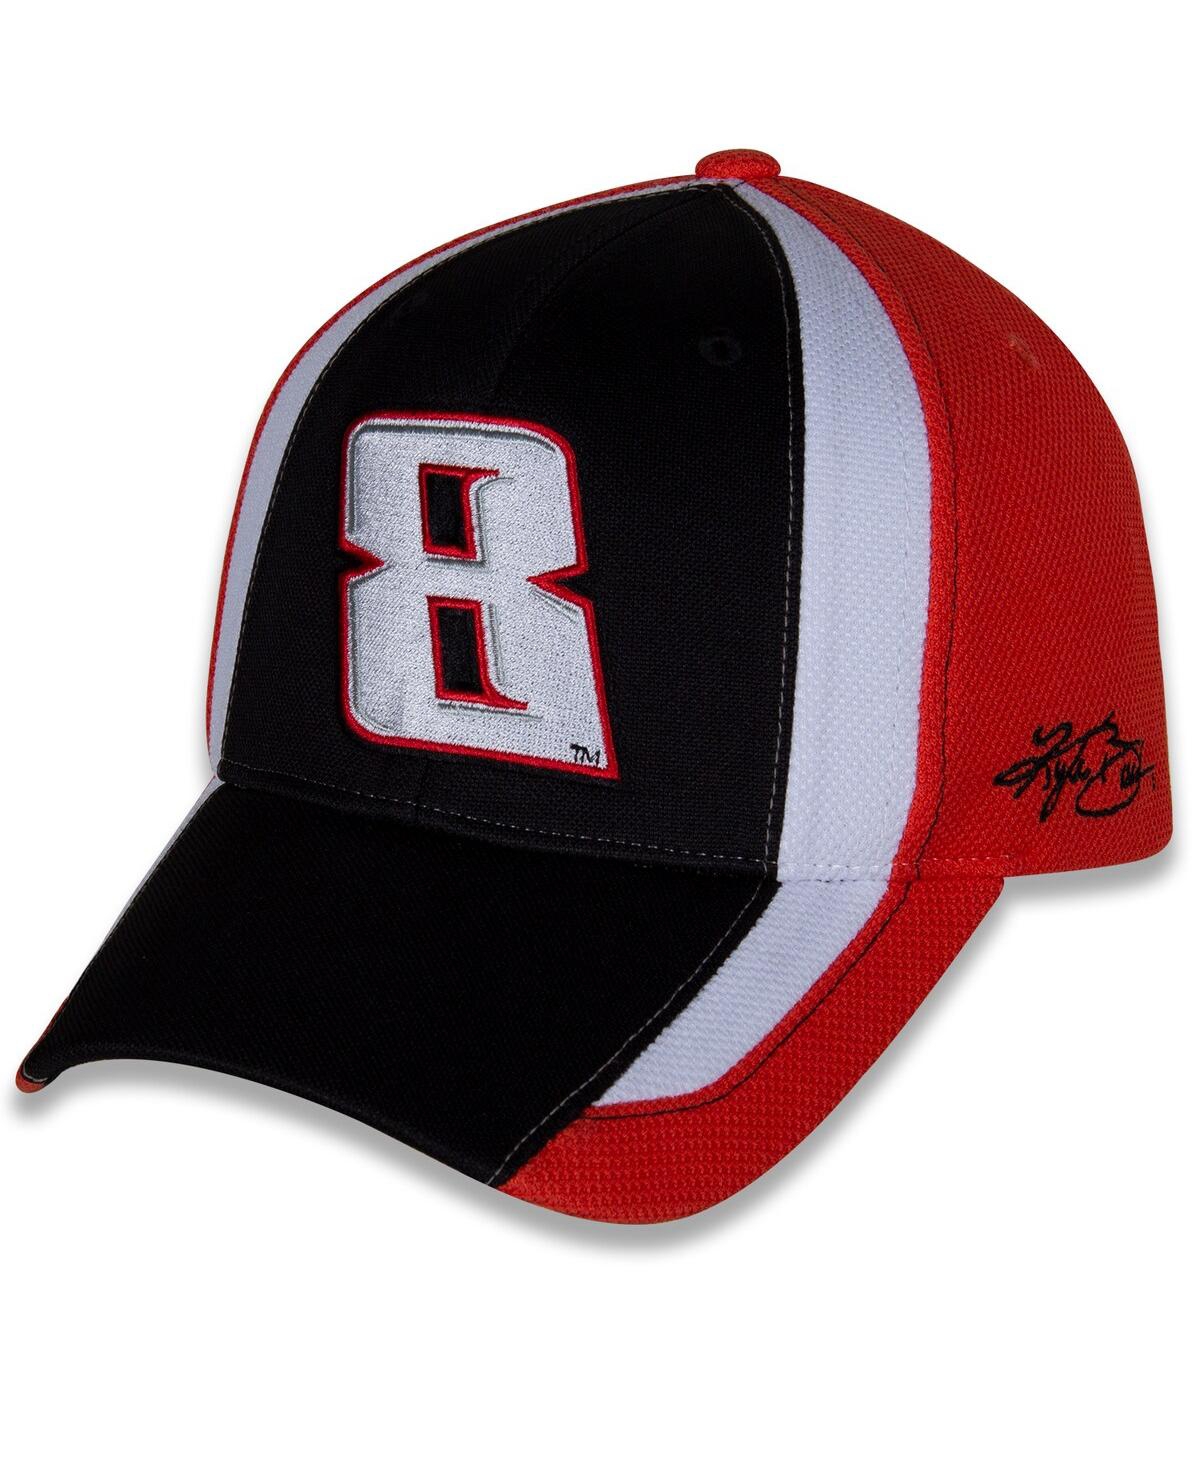 Richard Childress Racing Team Collection Men's  Black, White Kyle Busch Restart Adjustable Hat In Black,white